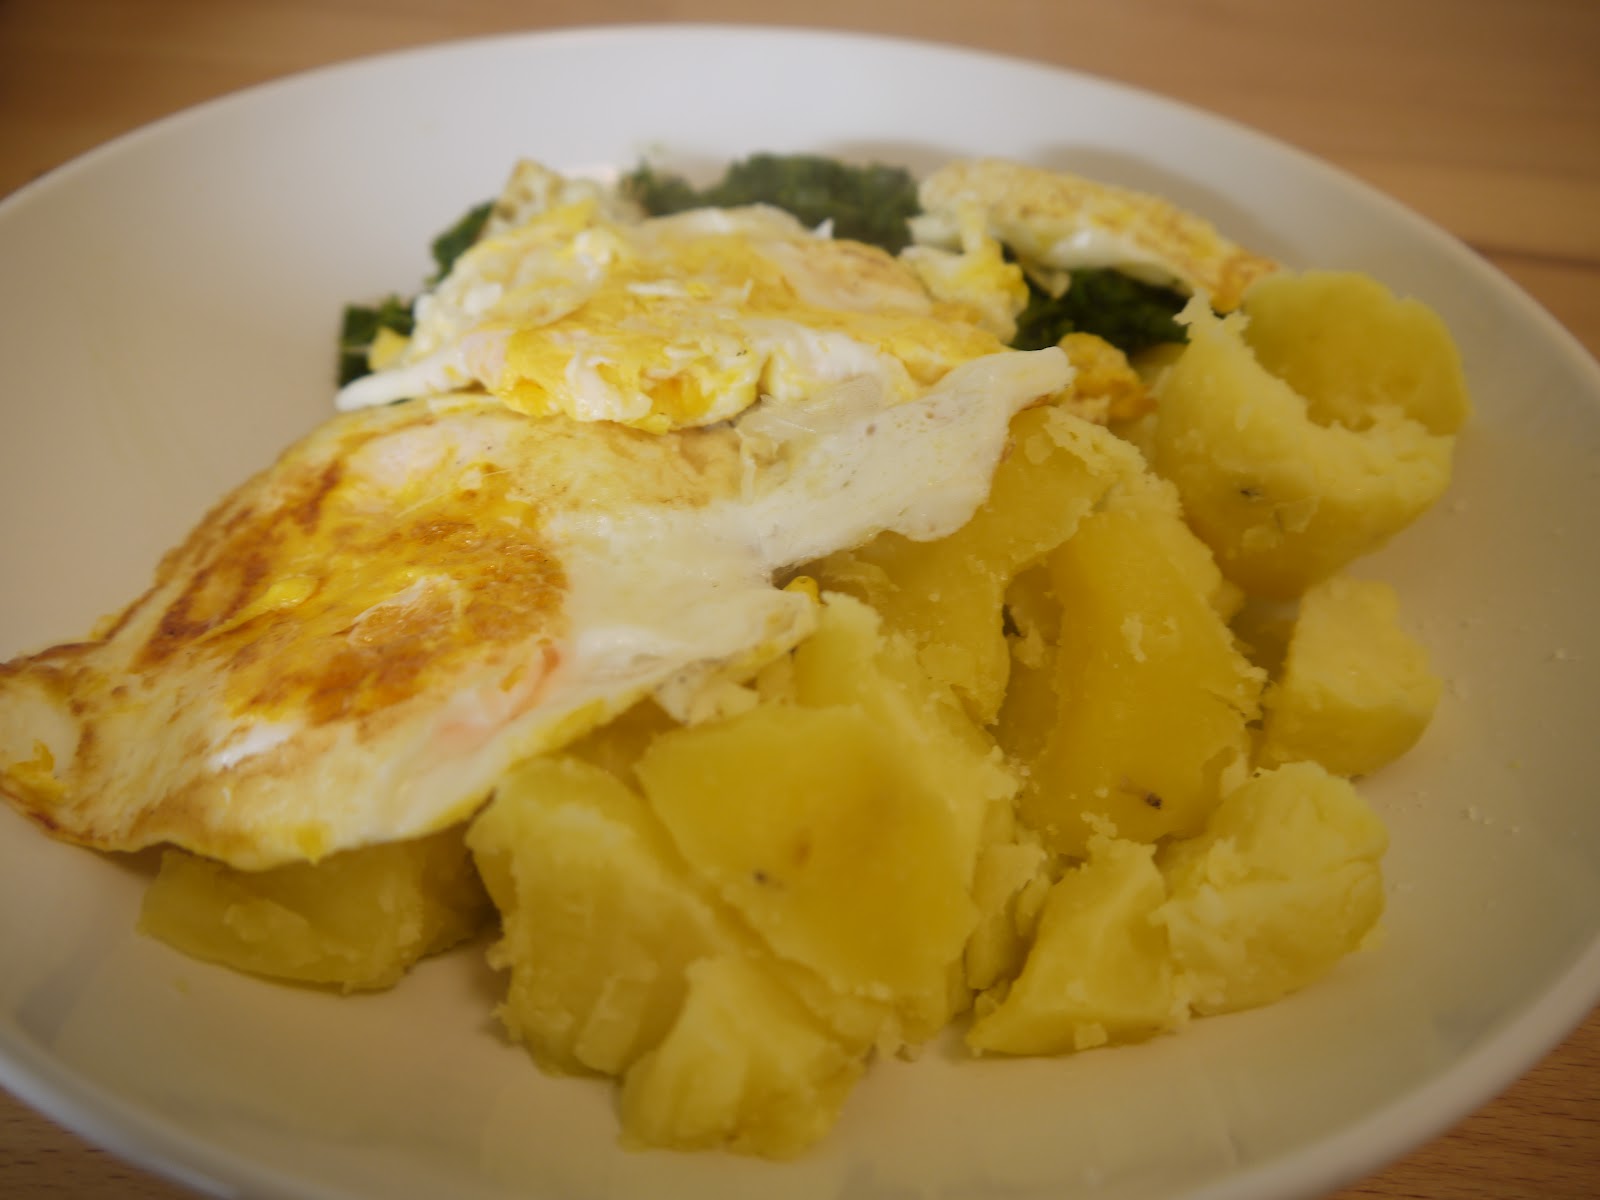 Just a little insane: Traditionell: Spinat, Spiegelei und Kartoffeln